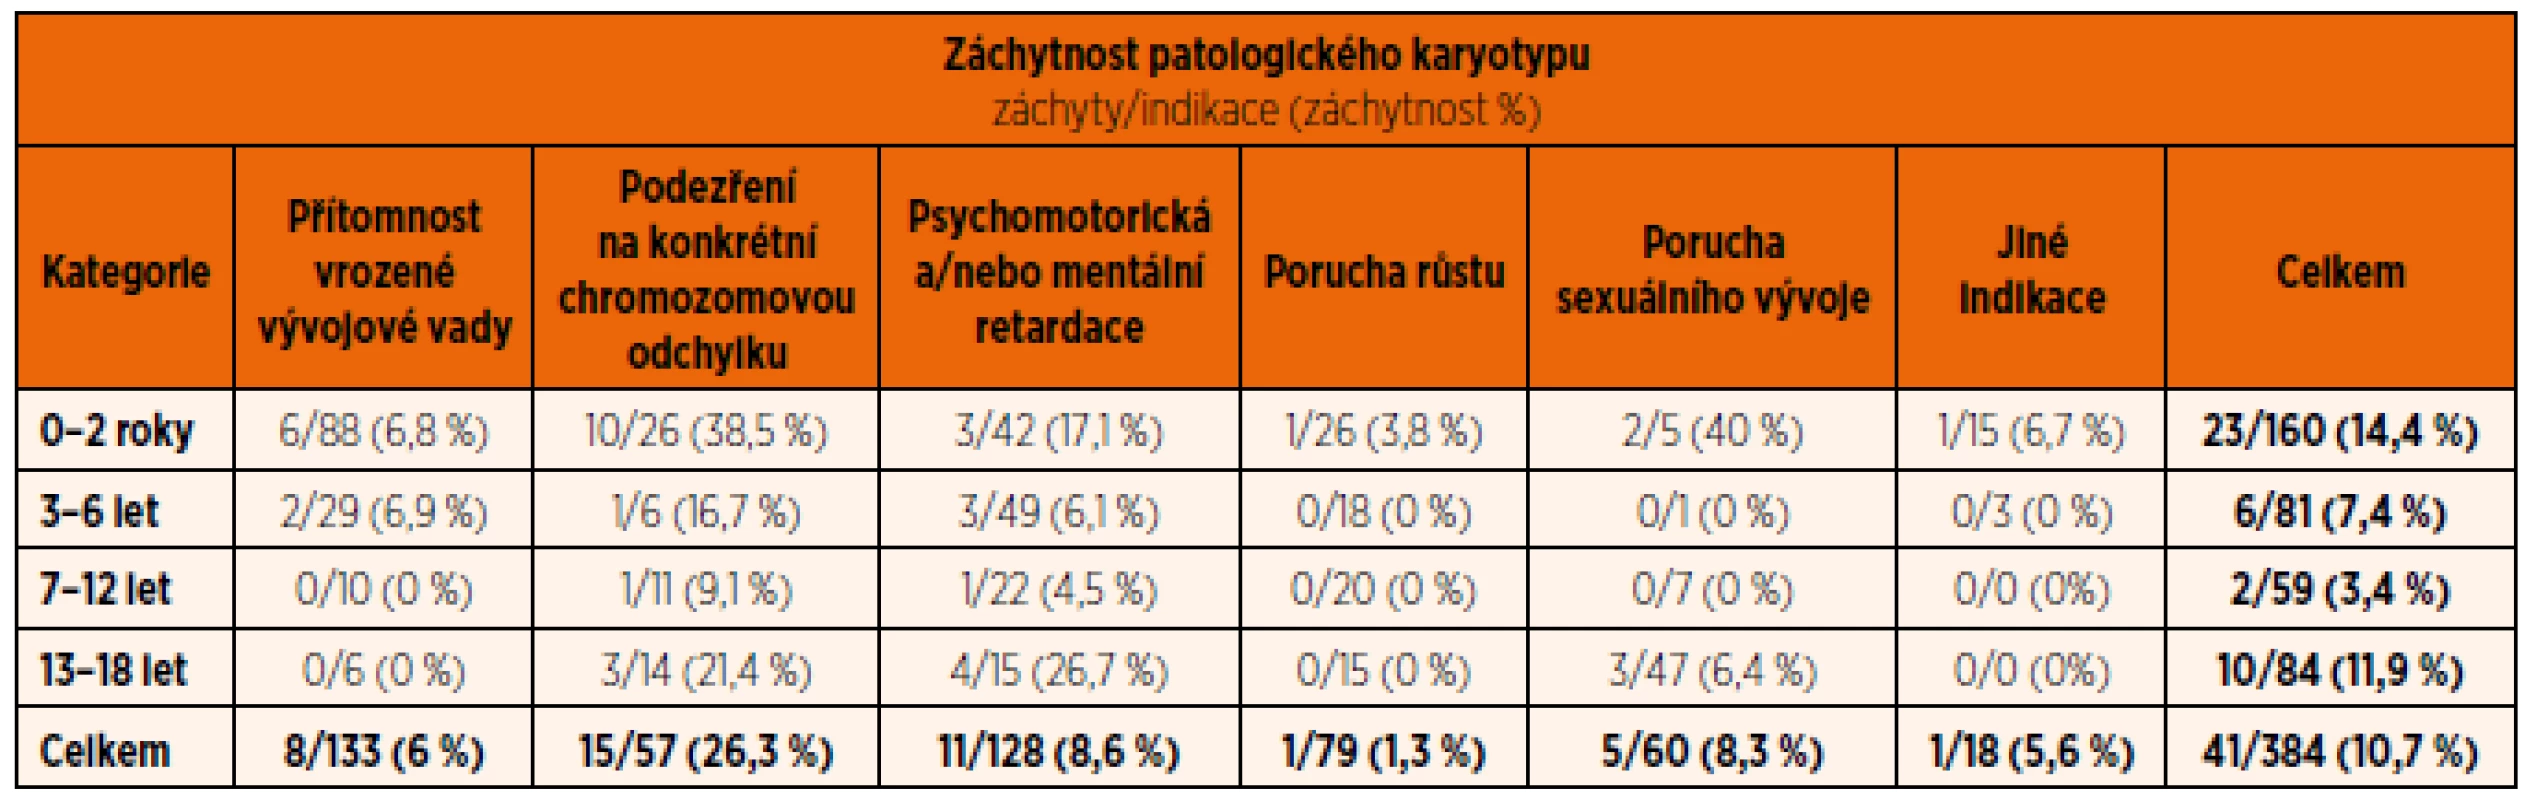 Záchytnost (v %) podle indikací k vyšetření karyotypu v jednotlivých věkových skupinách (Cytogenetická laboratoř ÚBLG, 2010–2012).